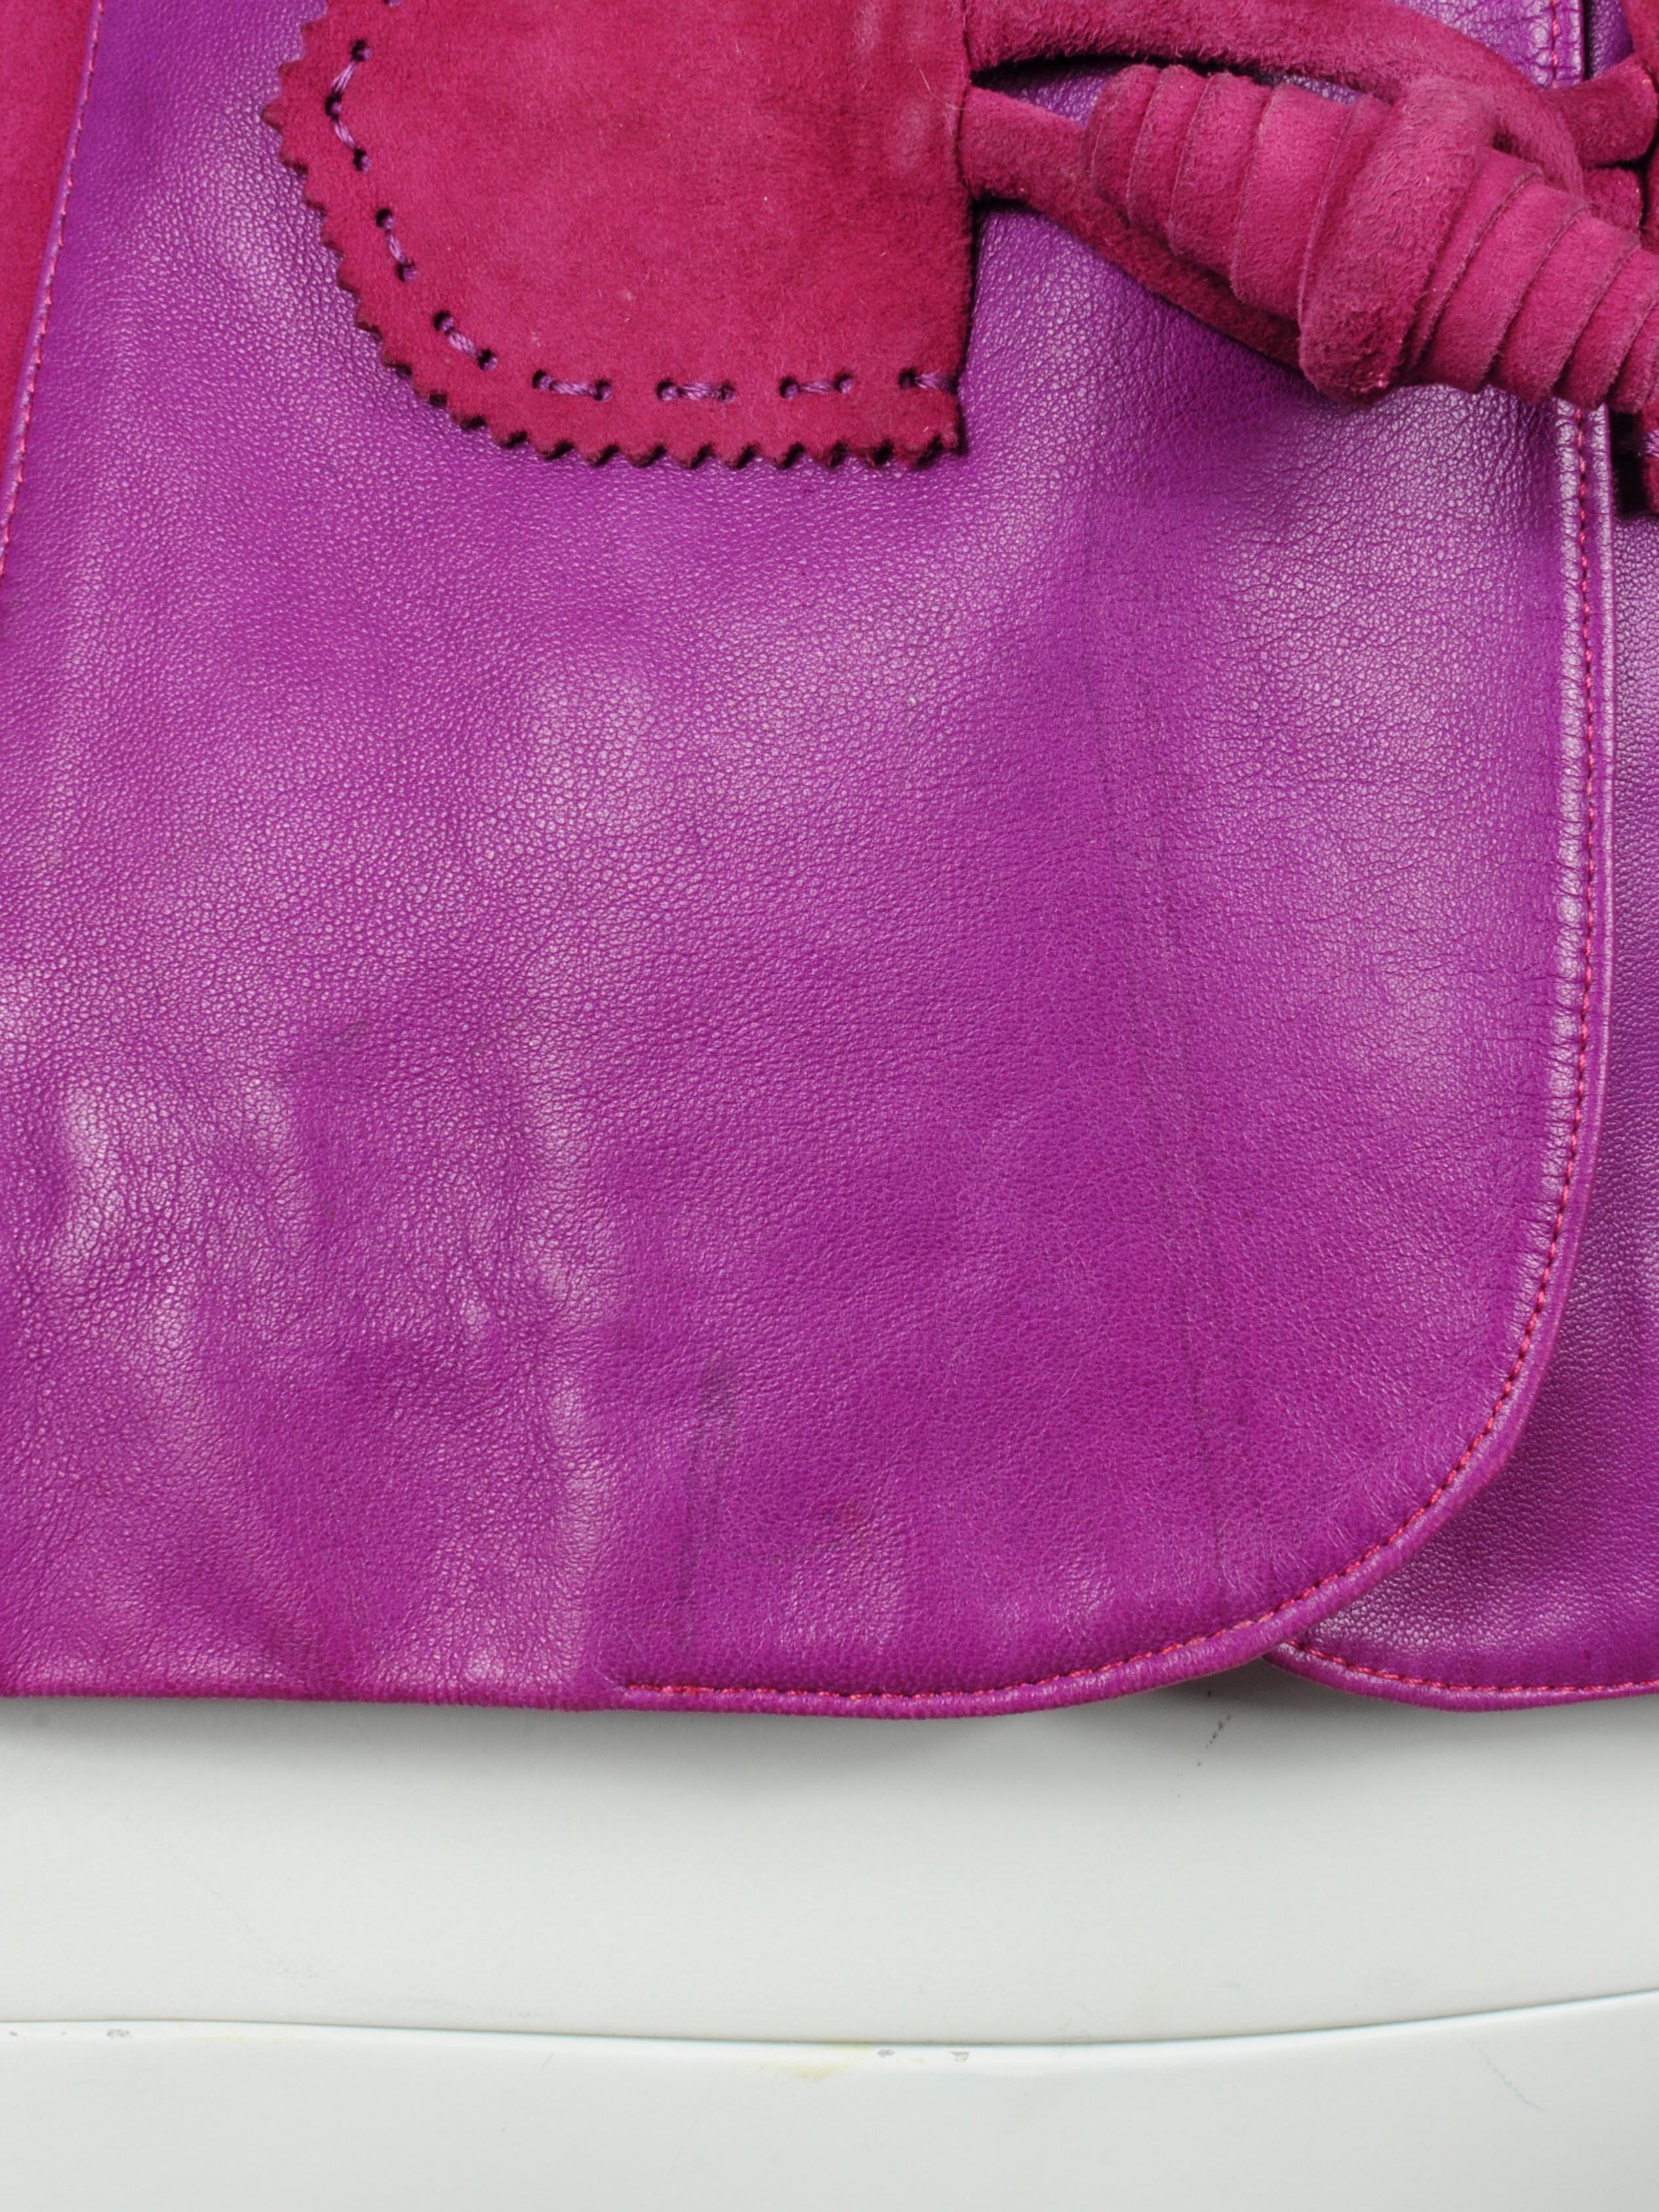 Elizabeth Wessel Monte Carlo Leather and Knitwear Purple Blazer 1980s For Sale 6